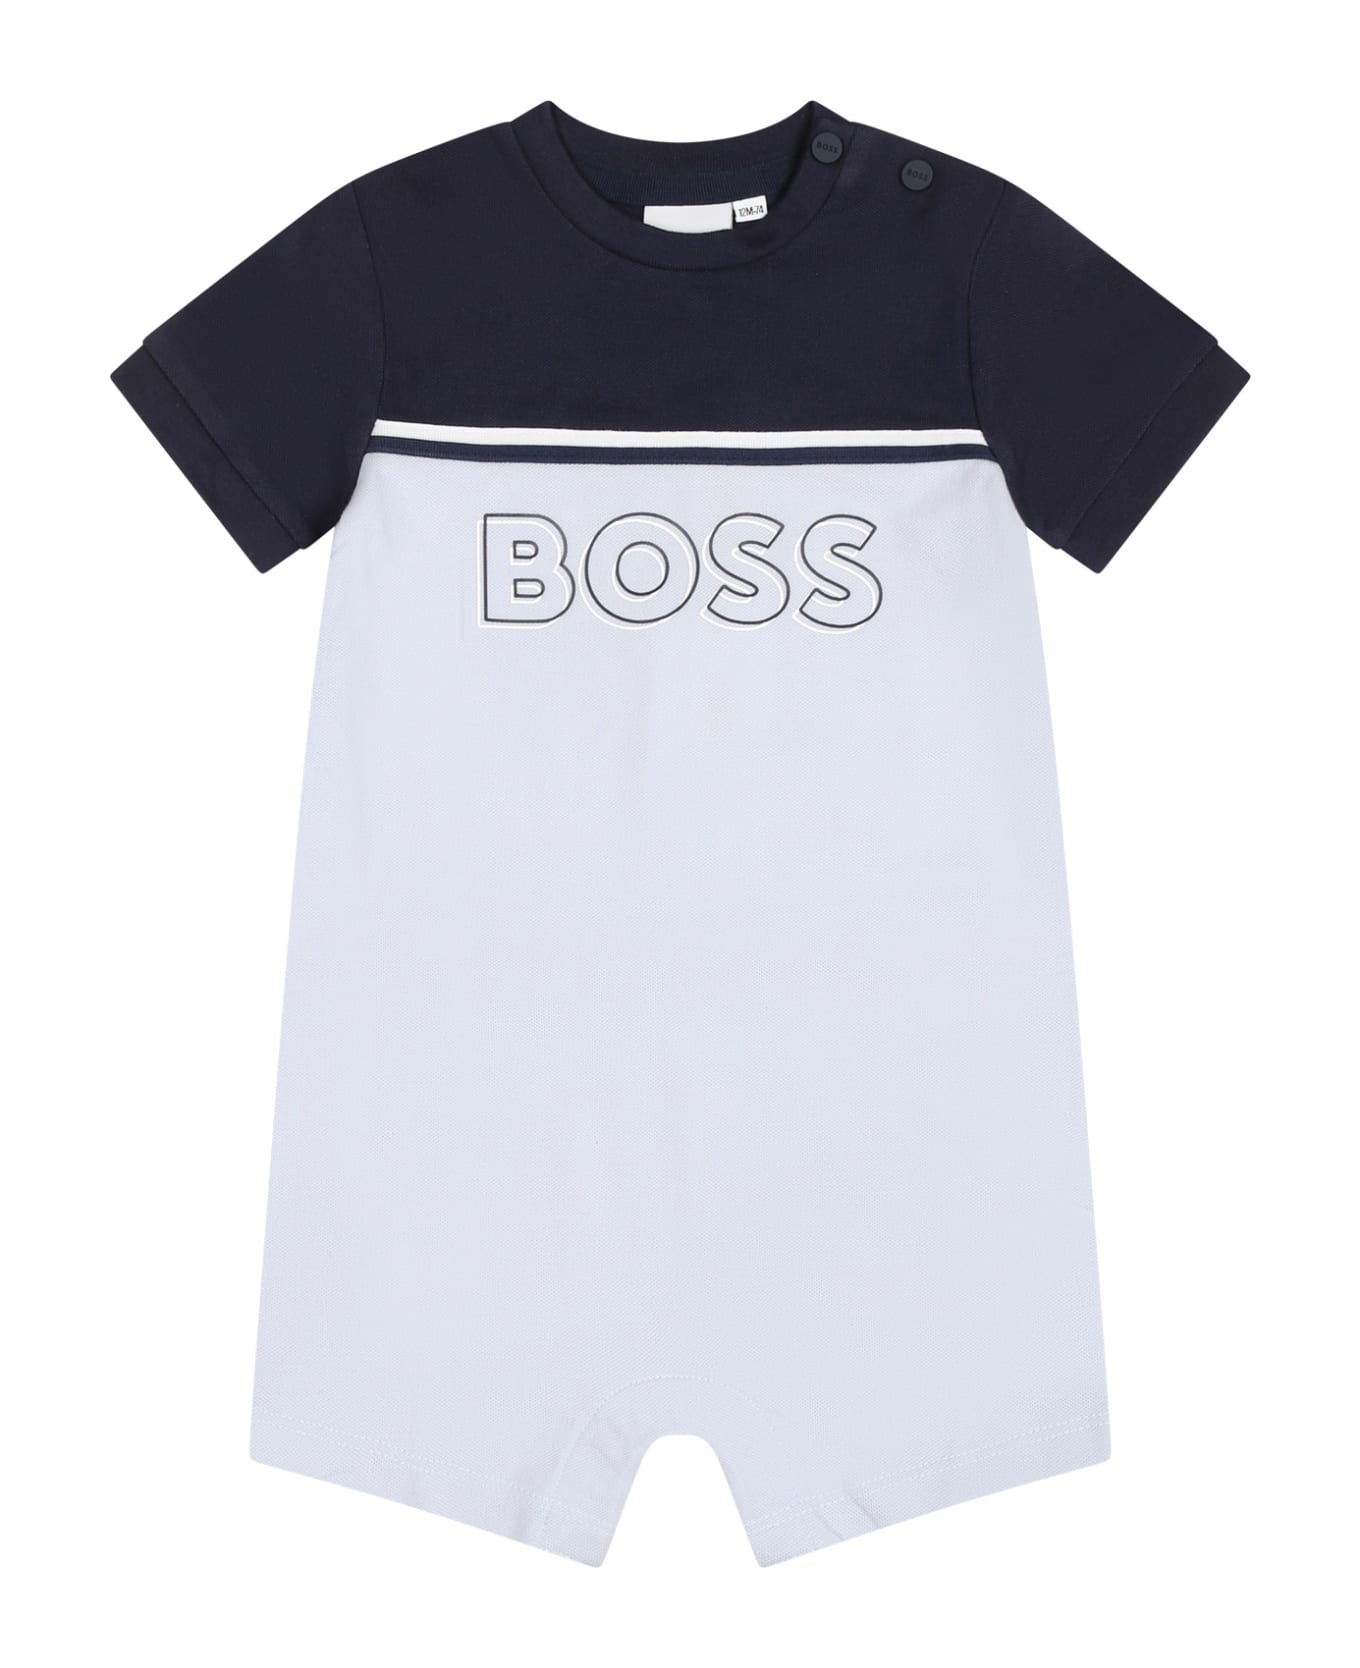 Hugo Boss Light Blue Romper For Baby Boy Wih Logo - Light Blue